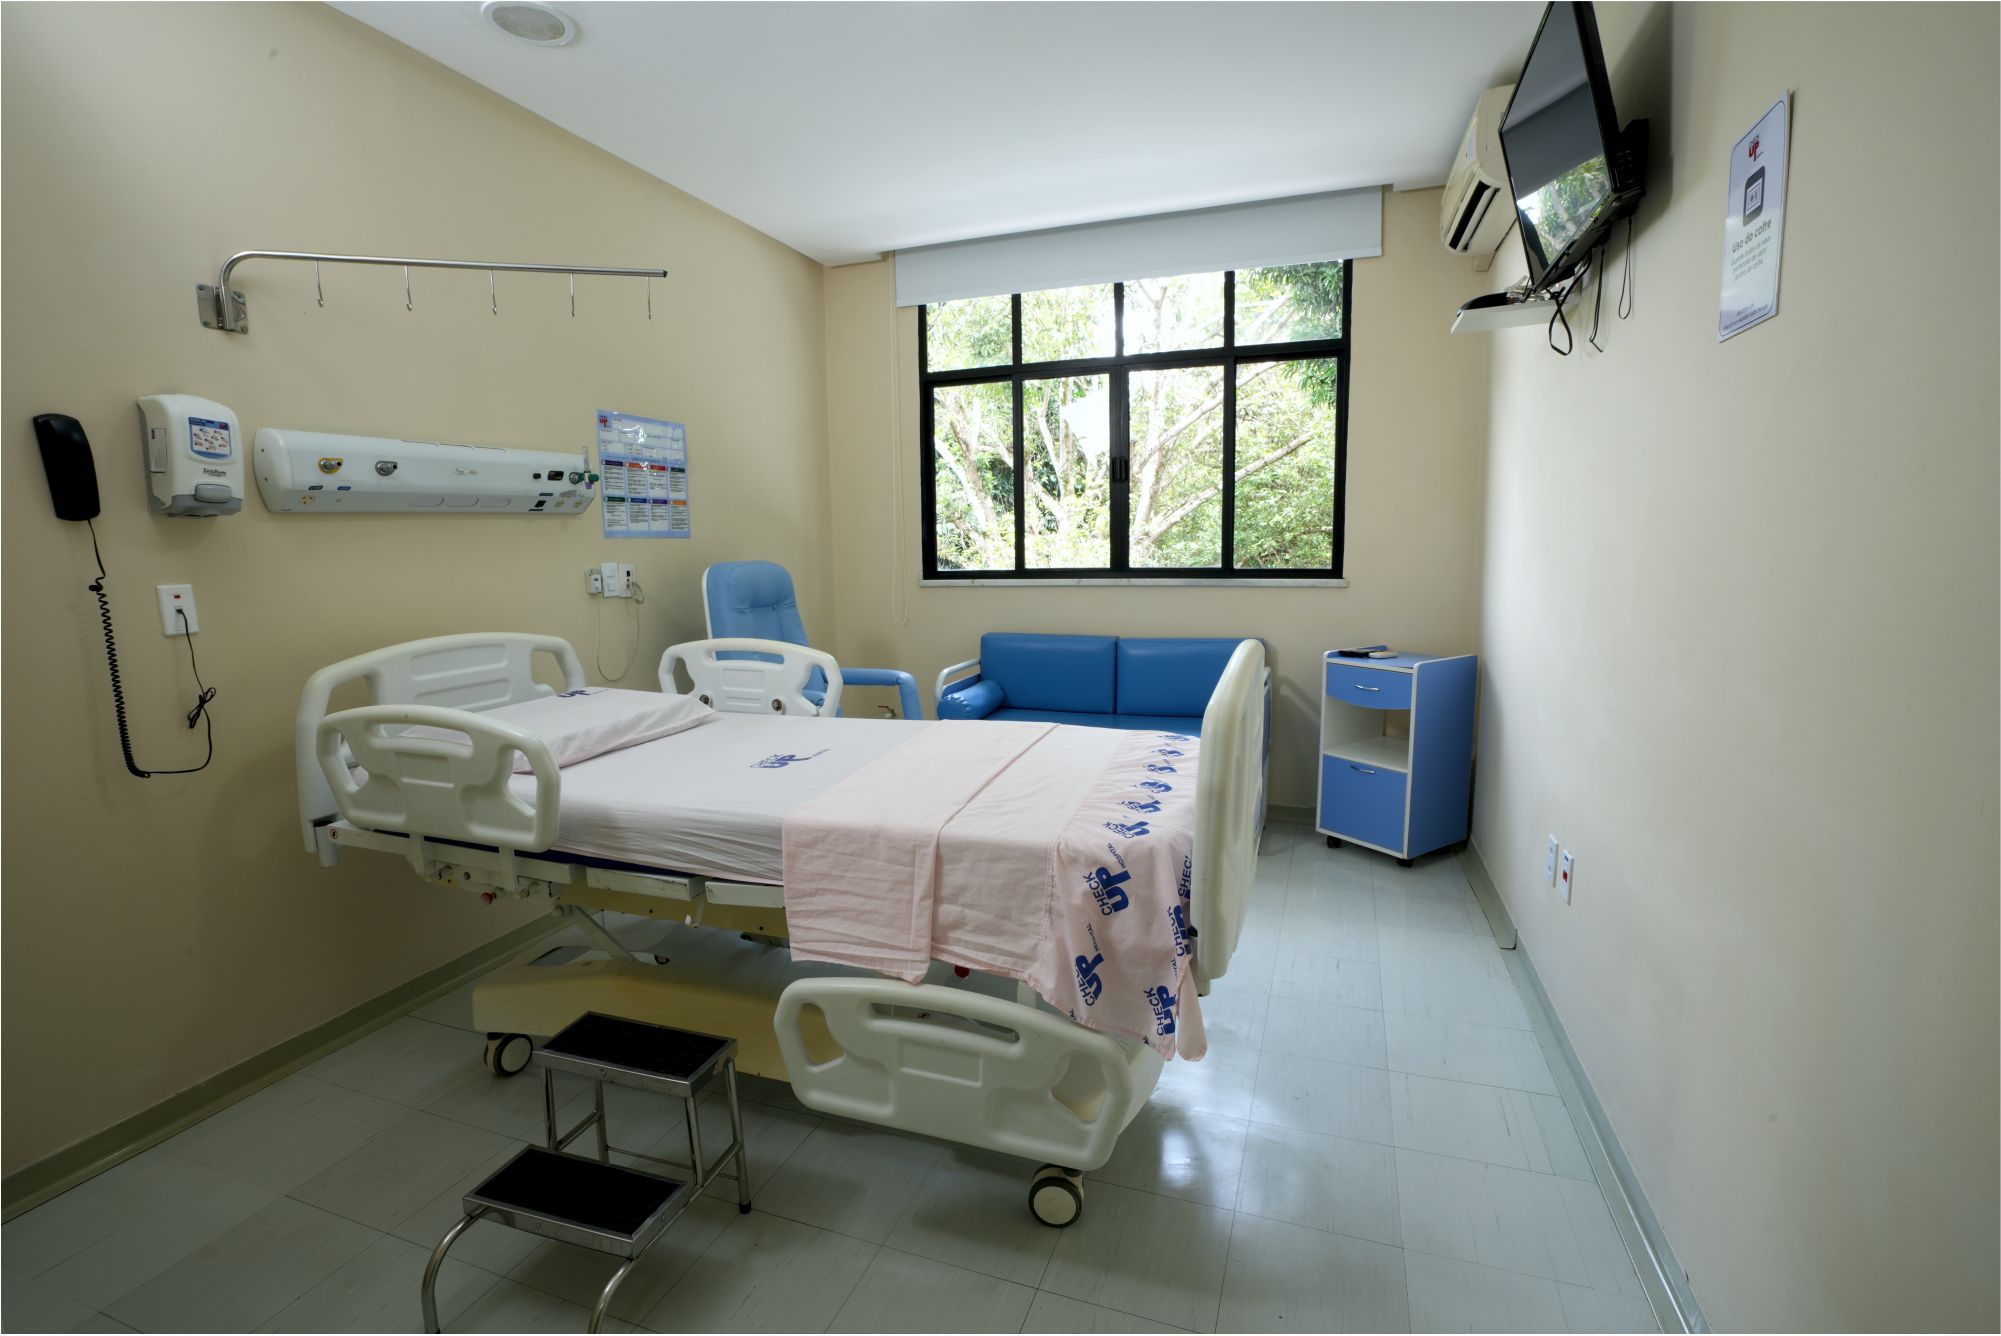 Apartamentos do Check Up Hospital para internação de paciente com conforto e privacidade.